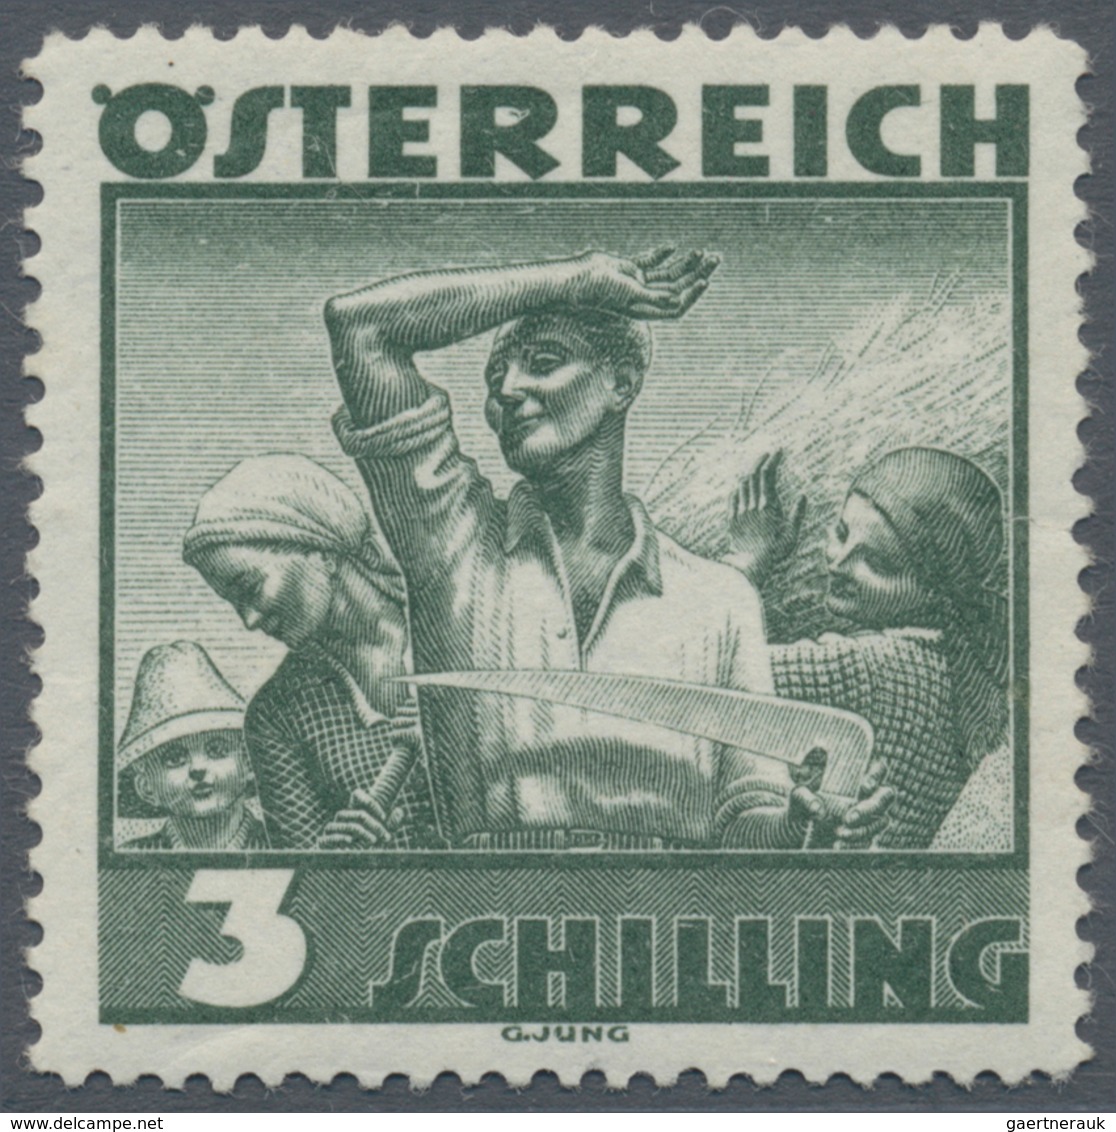 Österreich: 1934, Freimarken "Trachten", 3 Sch. "Ländliche Arbeit", zehn gezähnte Offsetdruck-Probed